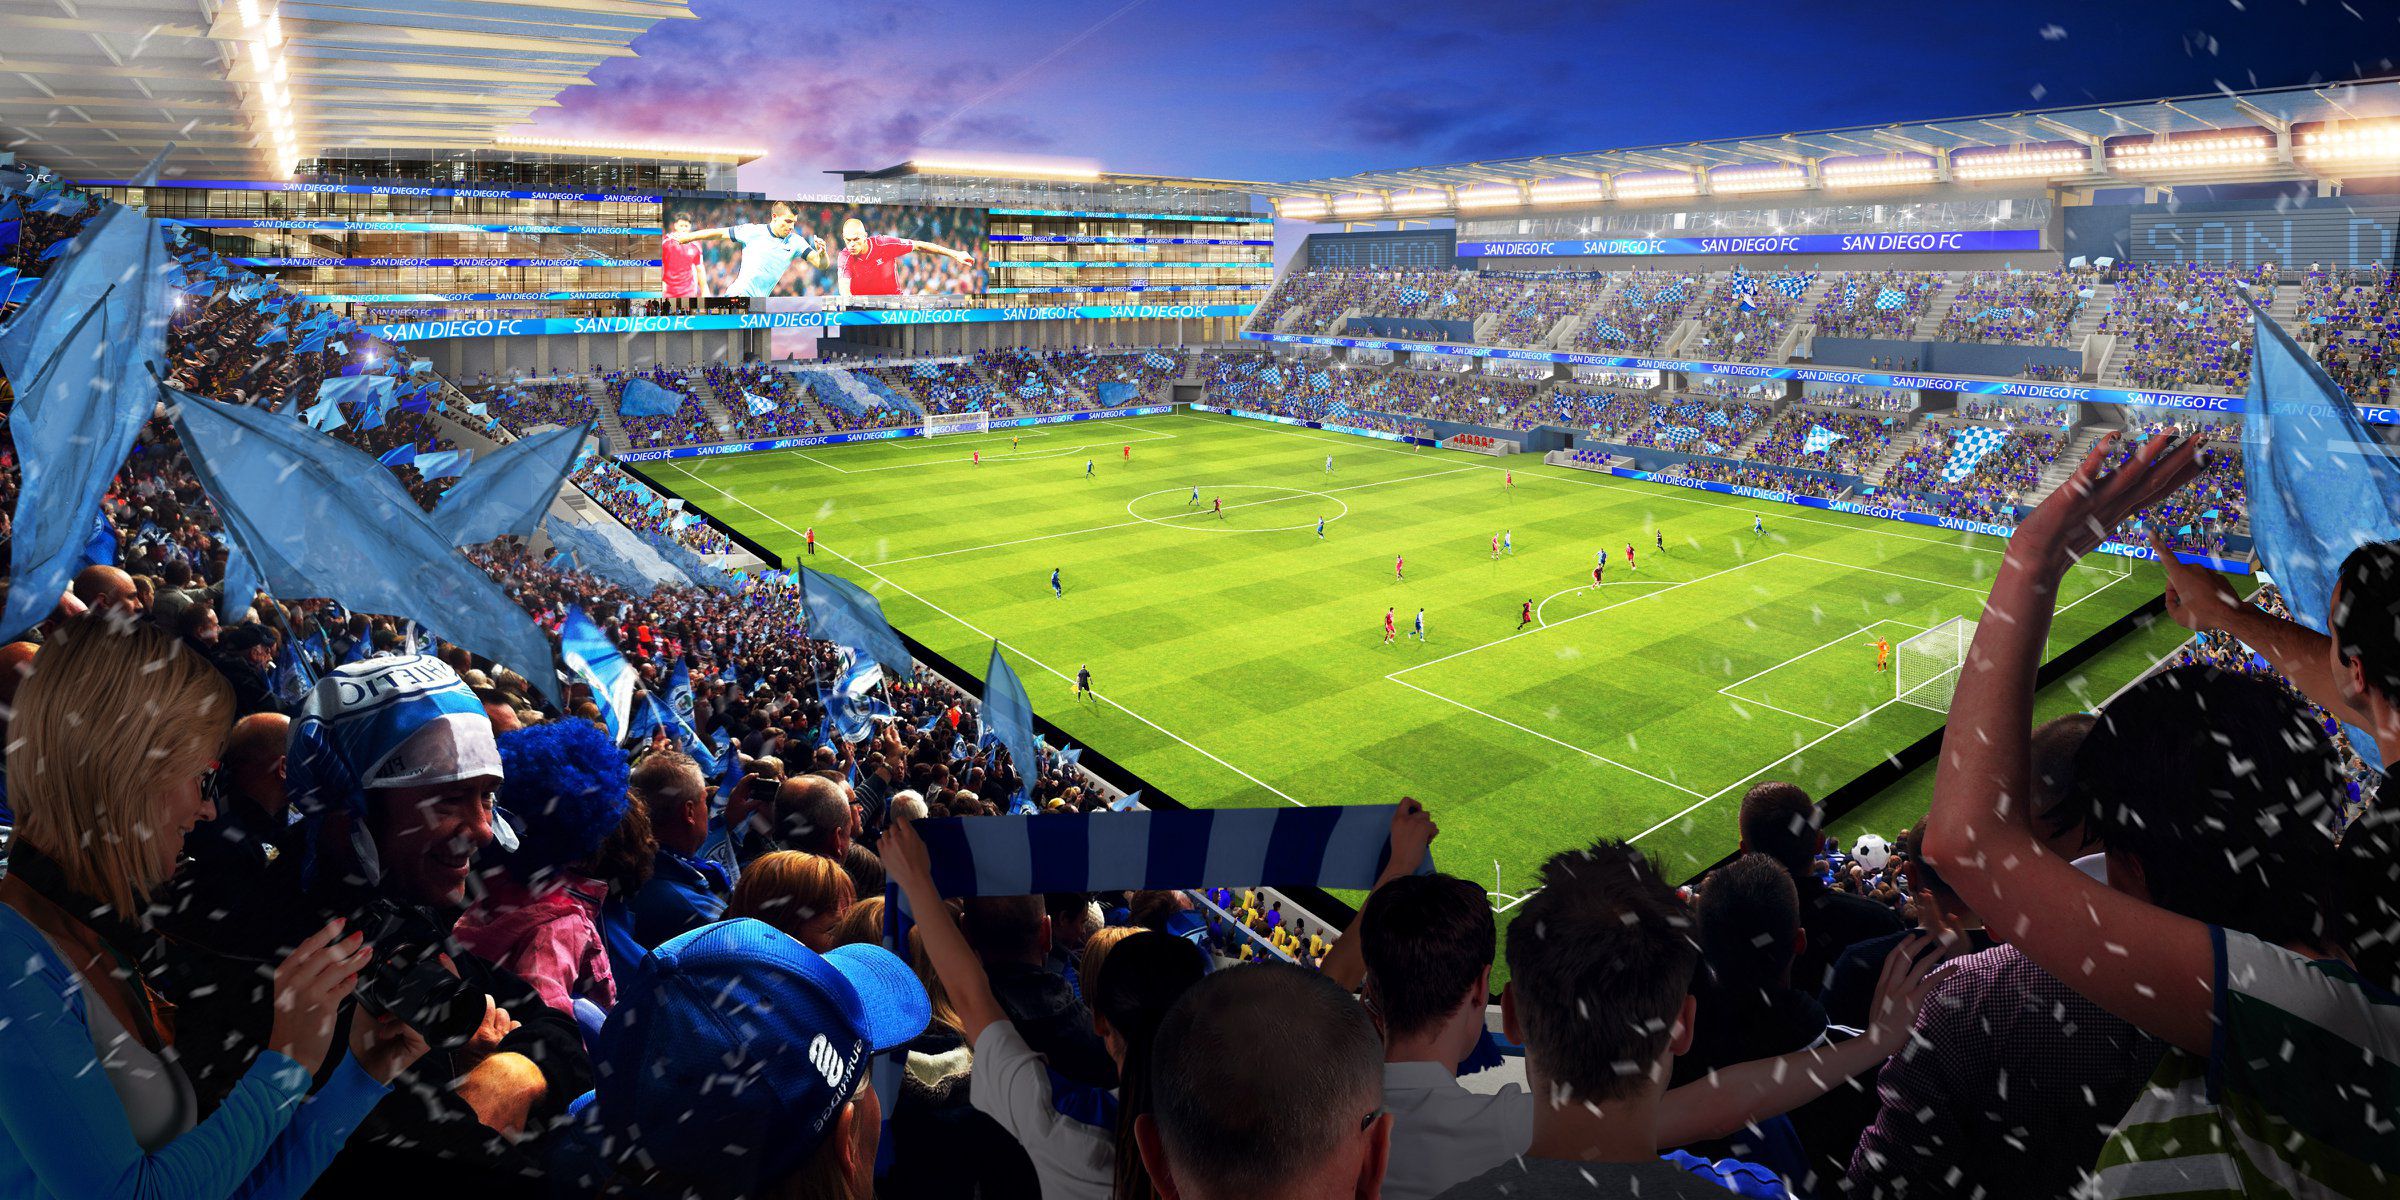 A San Diego új csapatának stadionja 35 ezer néző befogadására alkalmas (Fotó: Facebook/San Diego)